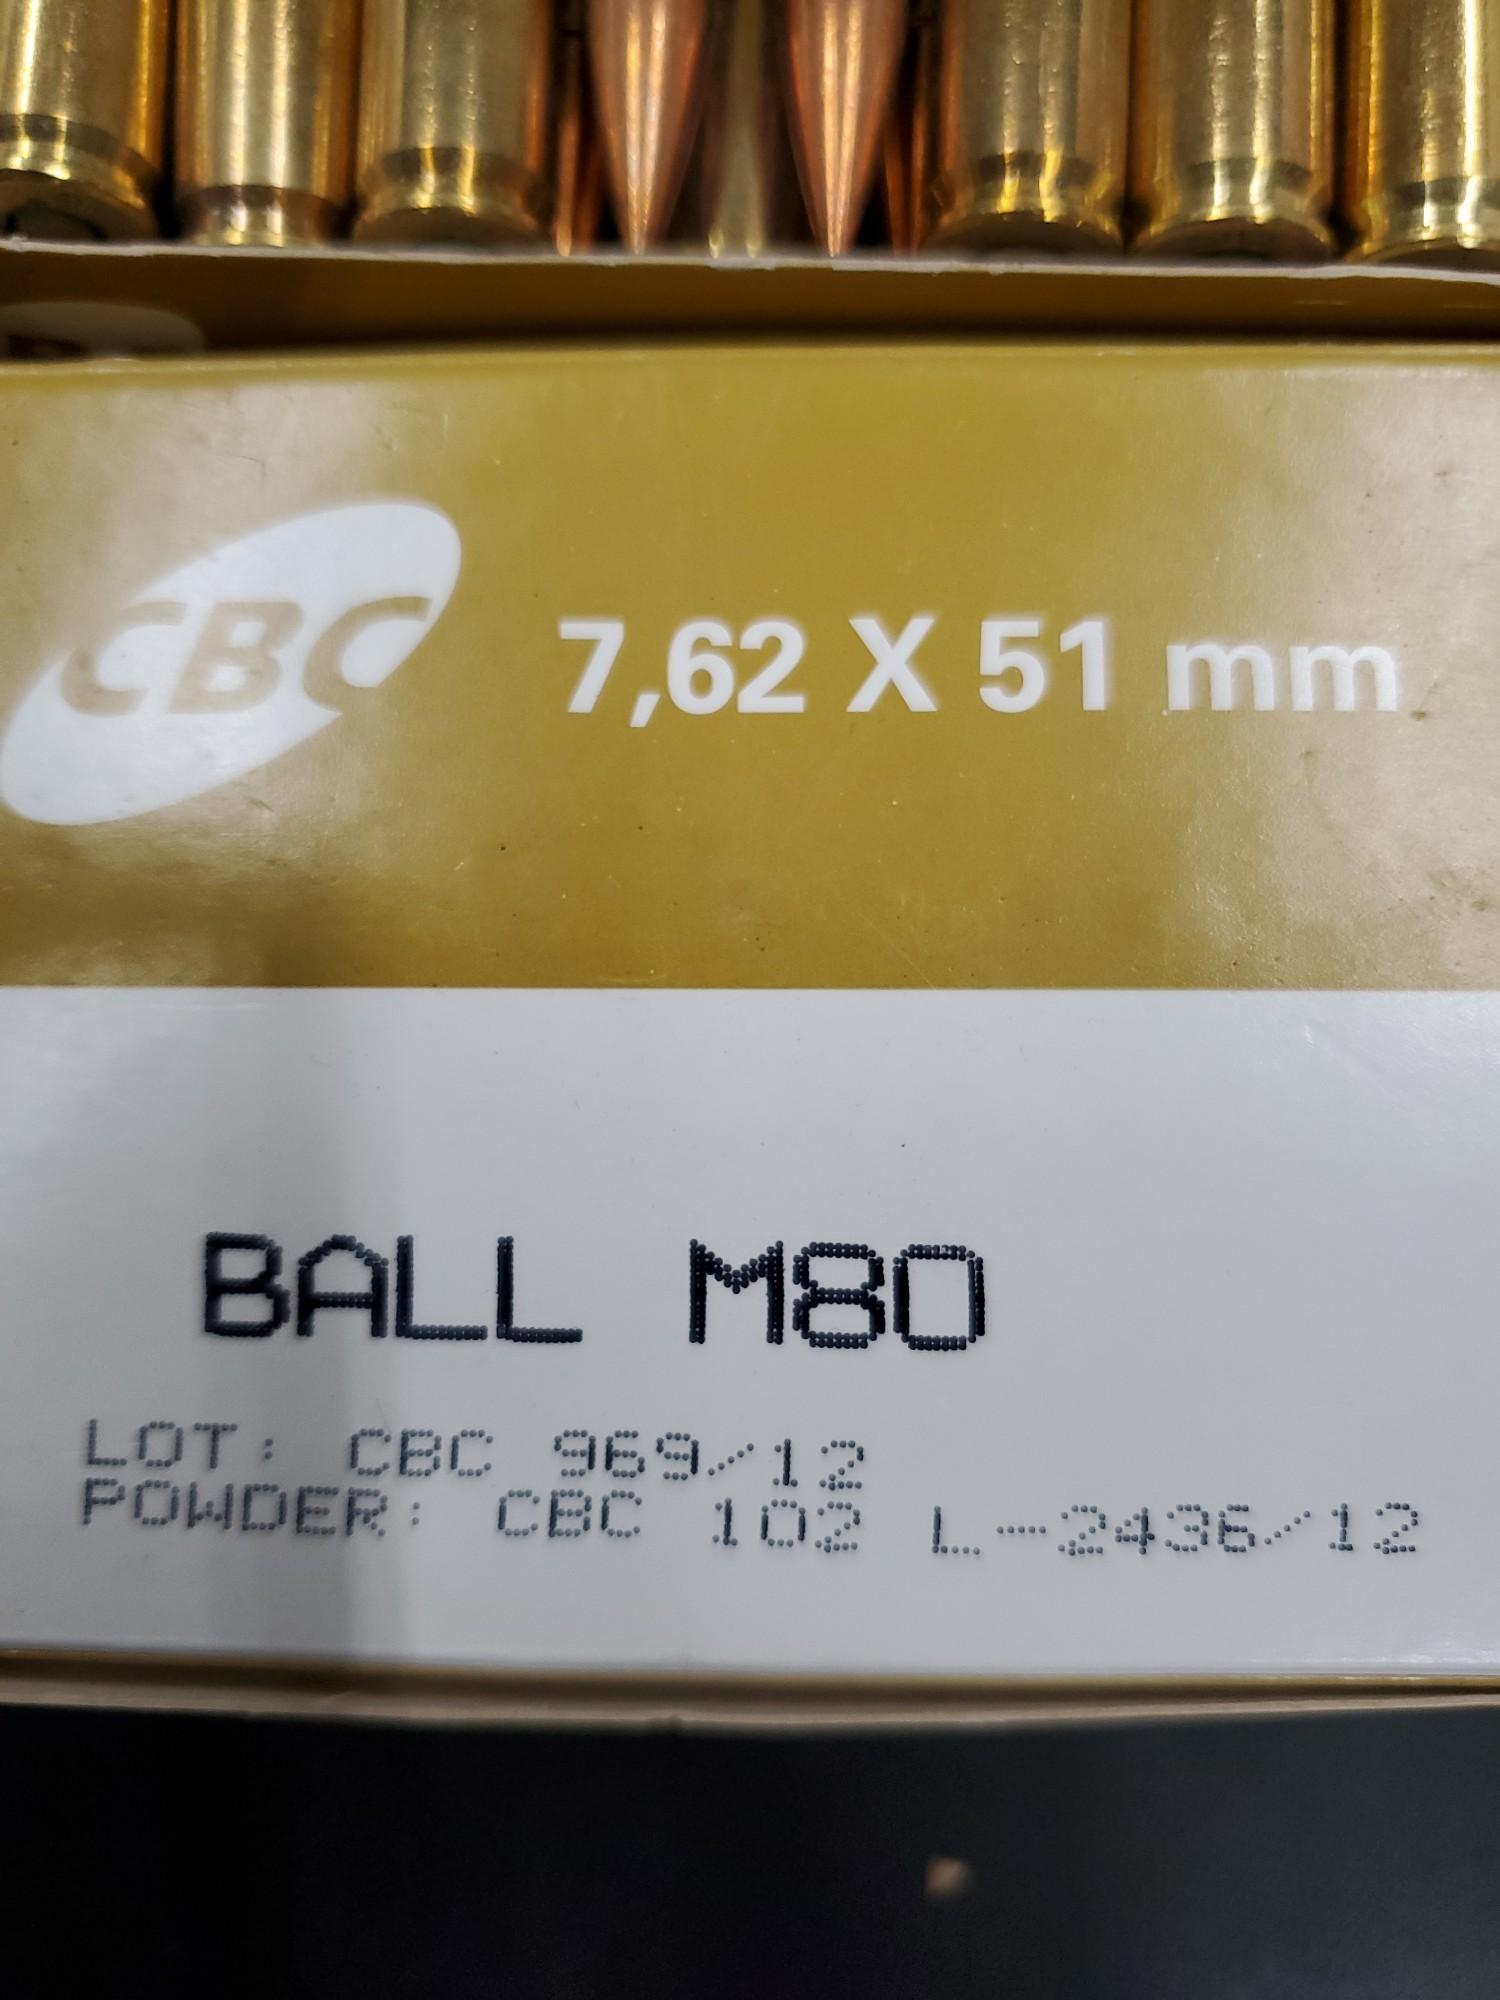 2- 50 Rnd Boxes CBC 7.62x51MM, Ball M80